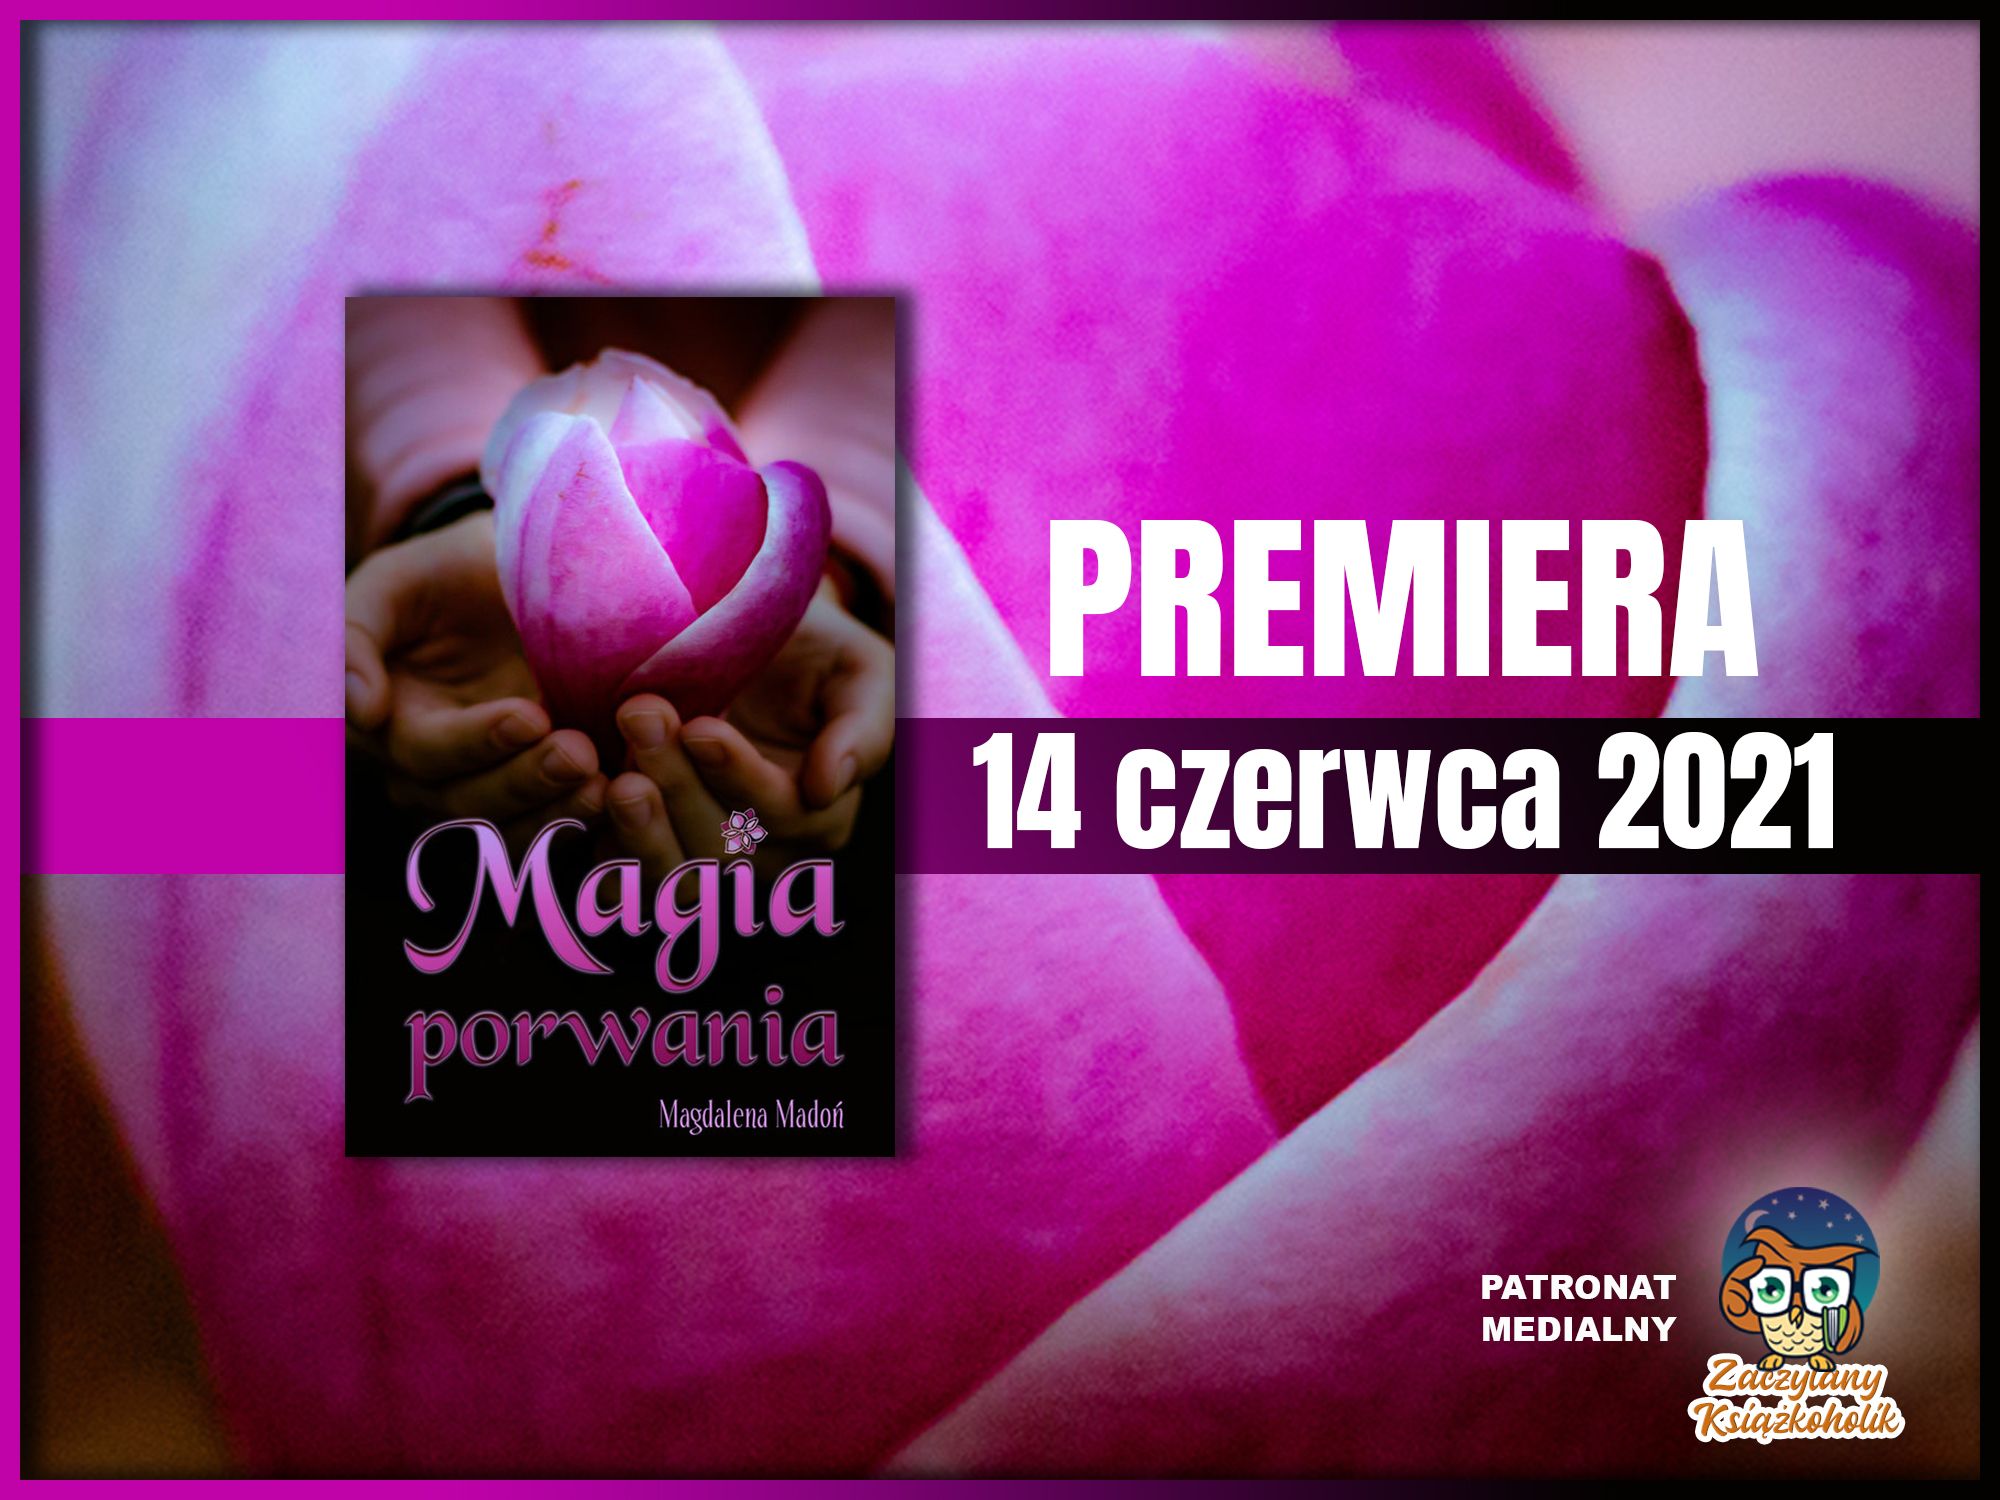 Magia porwania, Magdalena Madoń, zaczytanyksiazkoholik.pl